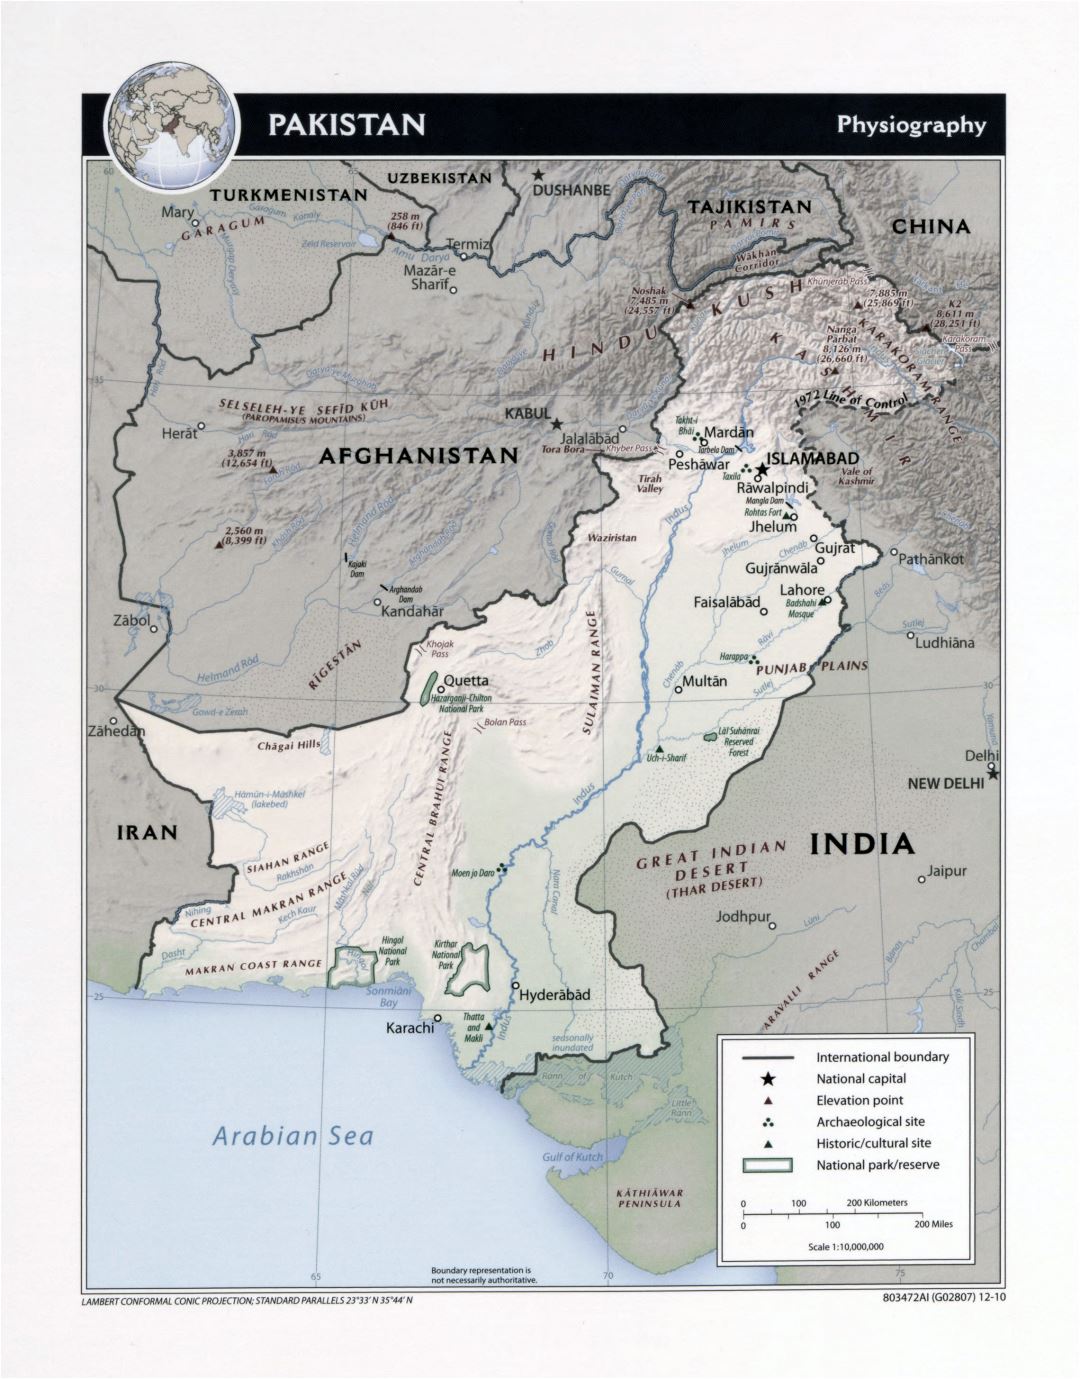 Grande detallado mapa de fisiografía de Pakistán - 2010